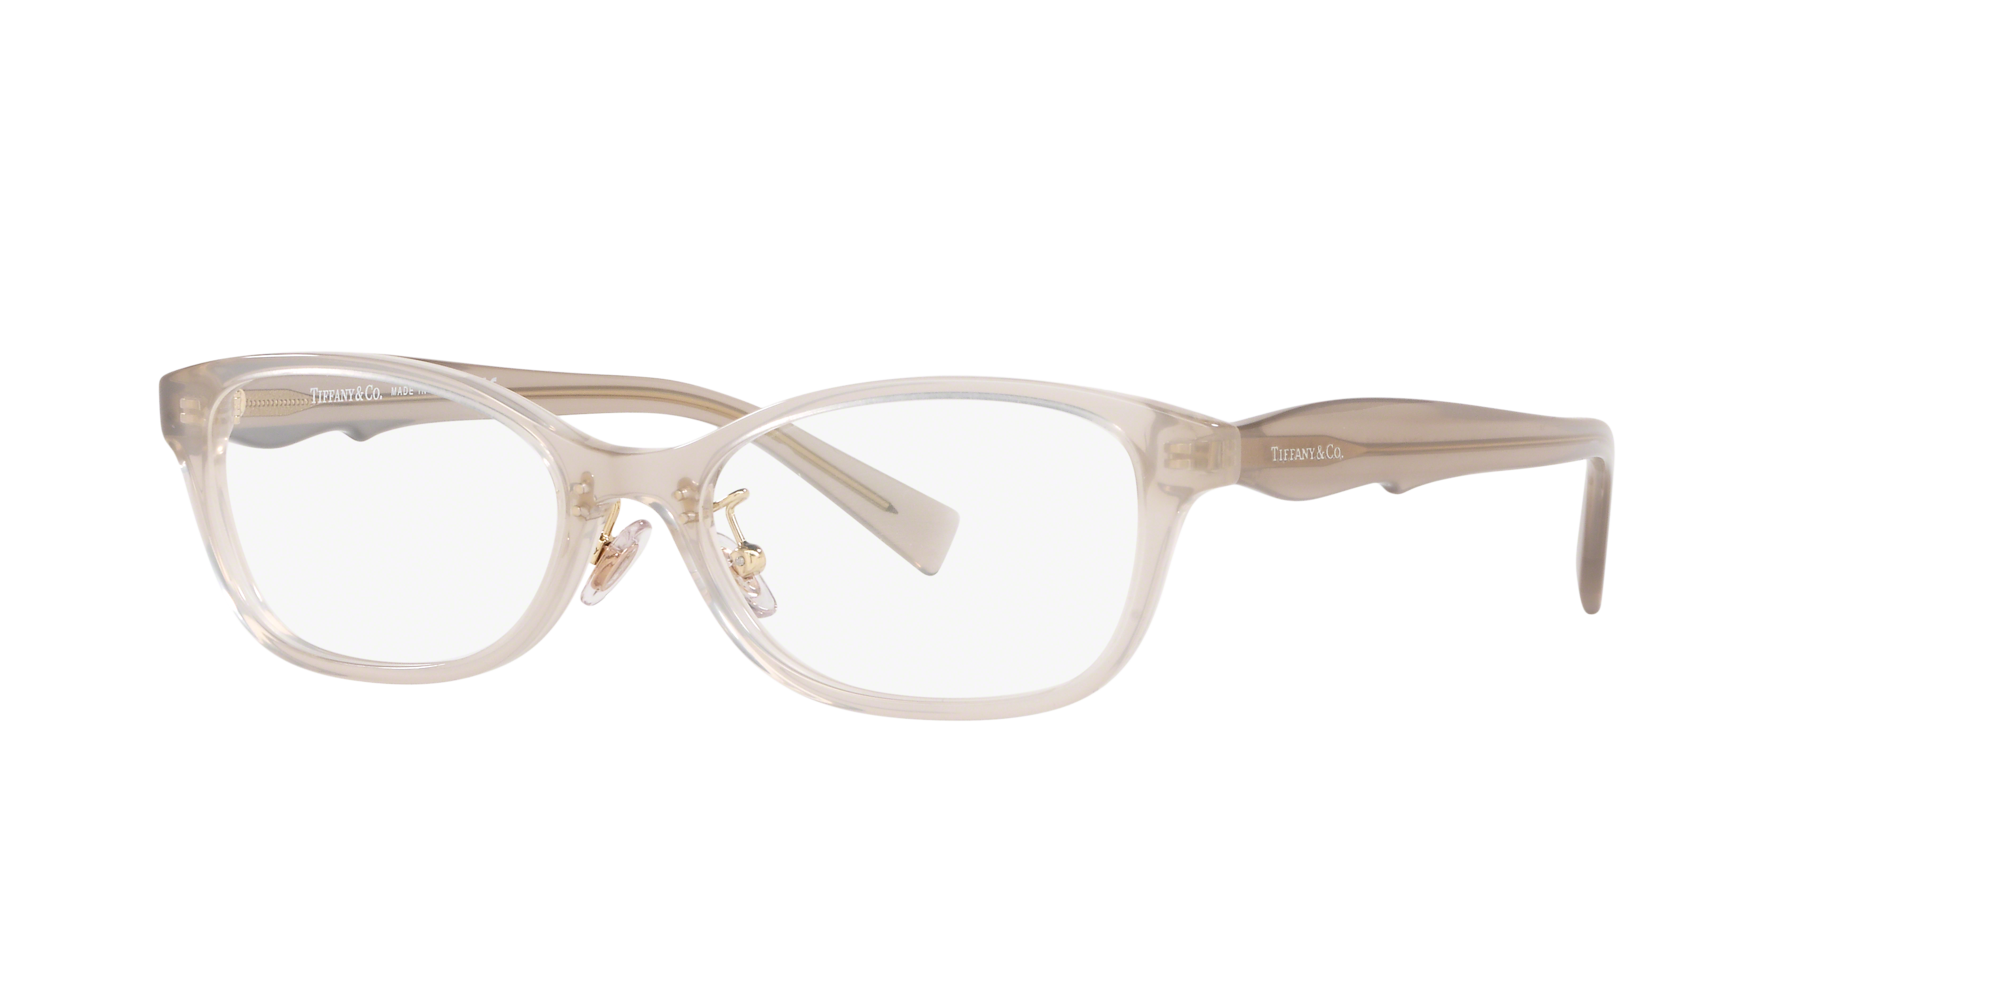 tiffany sunglasses opsm